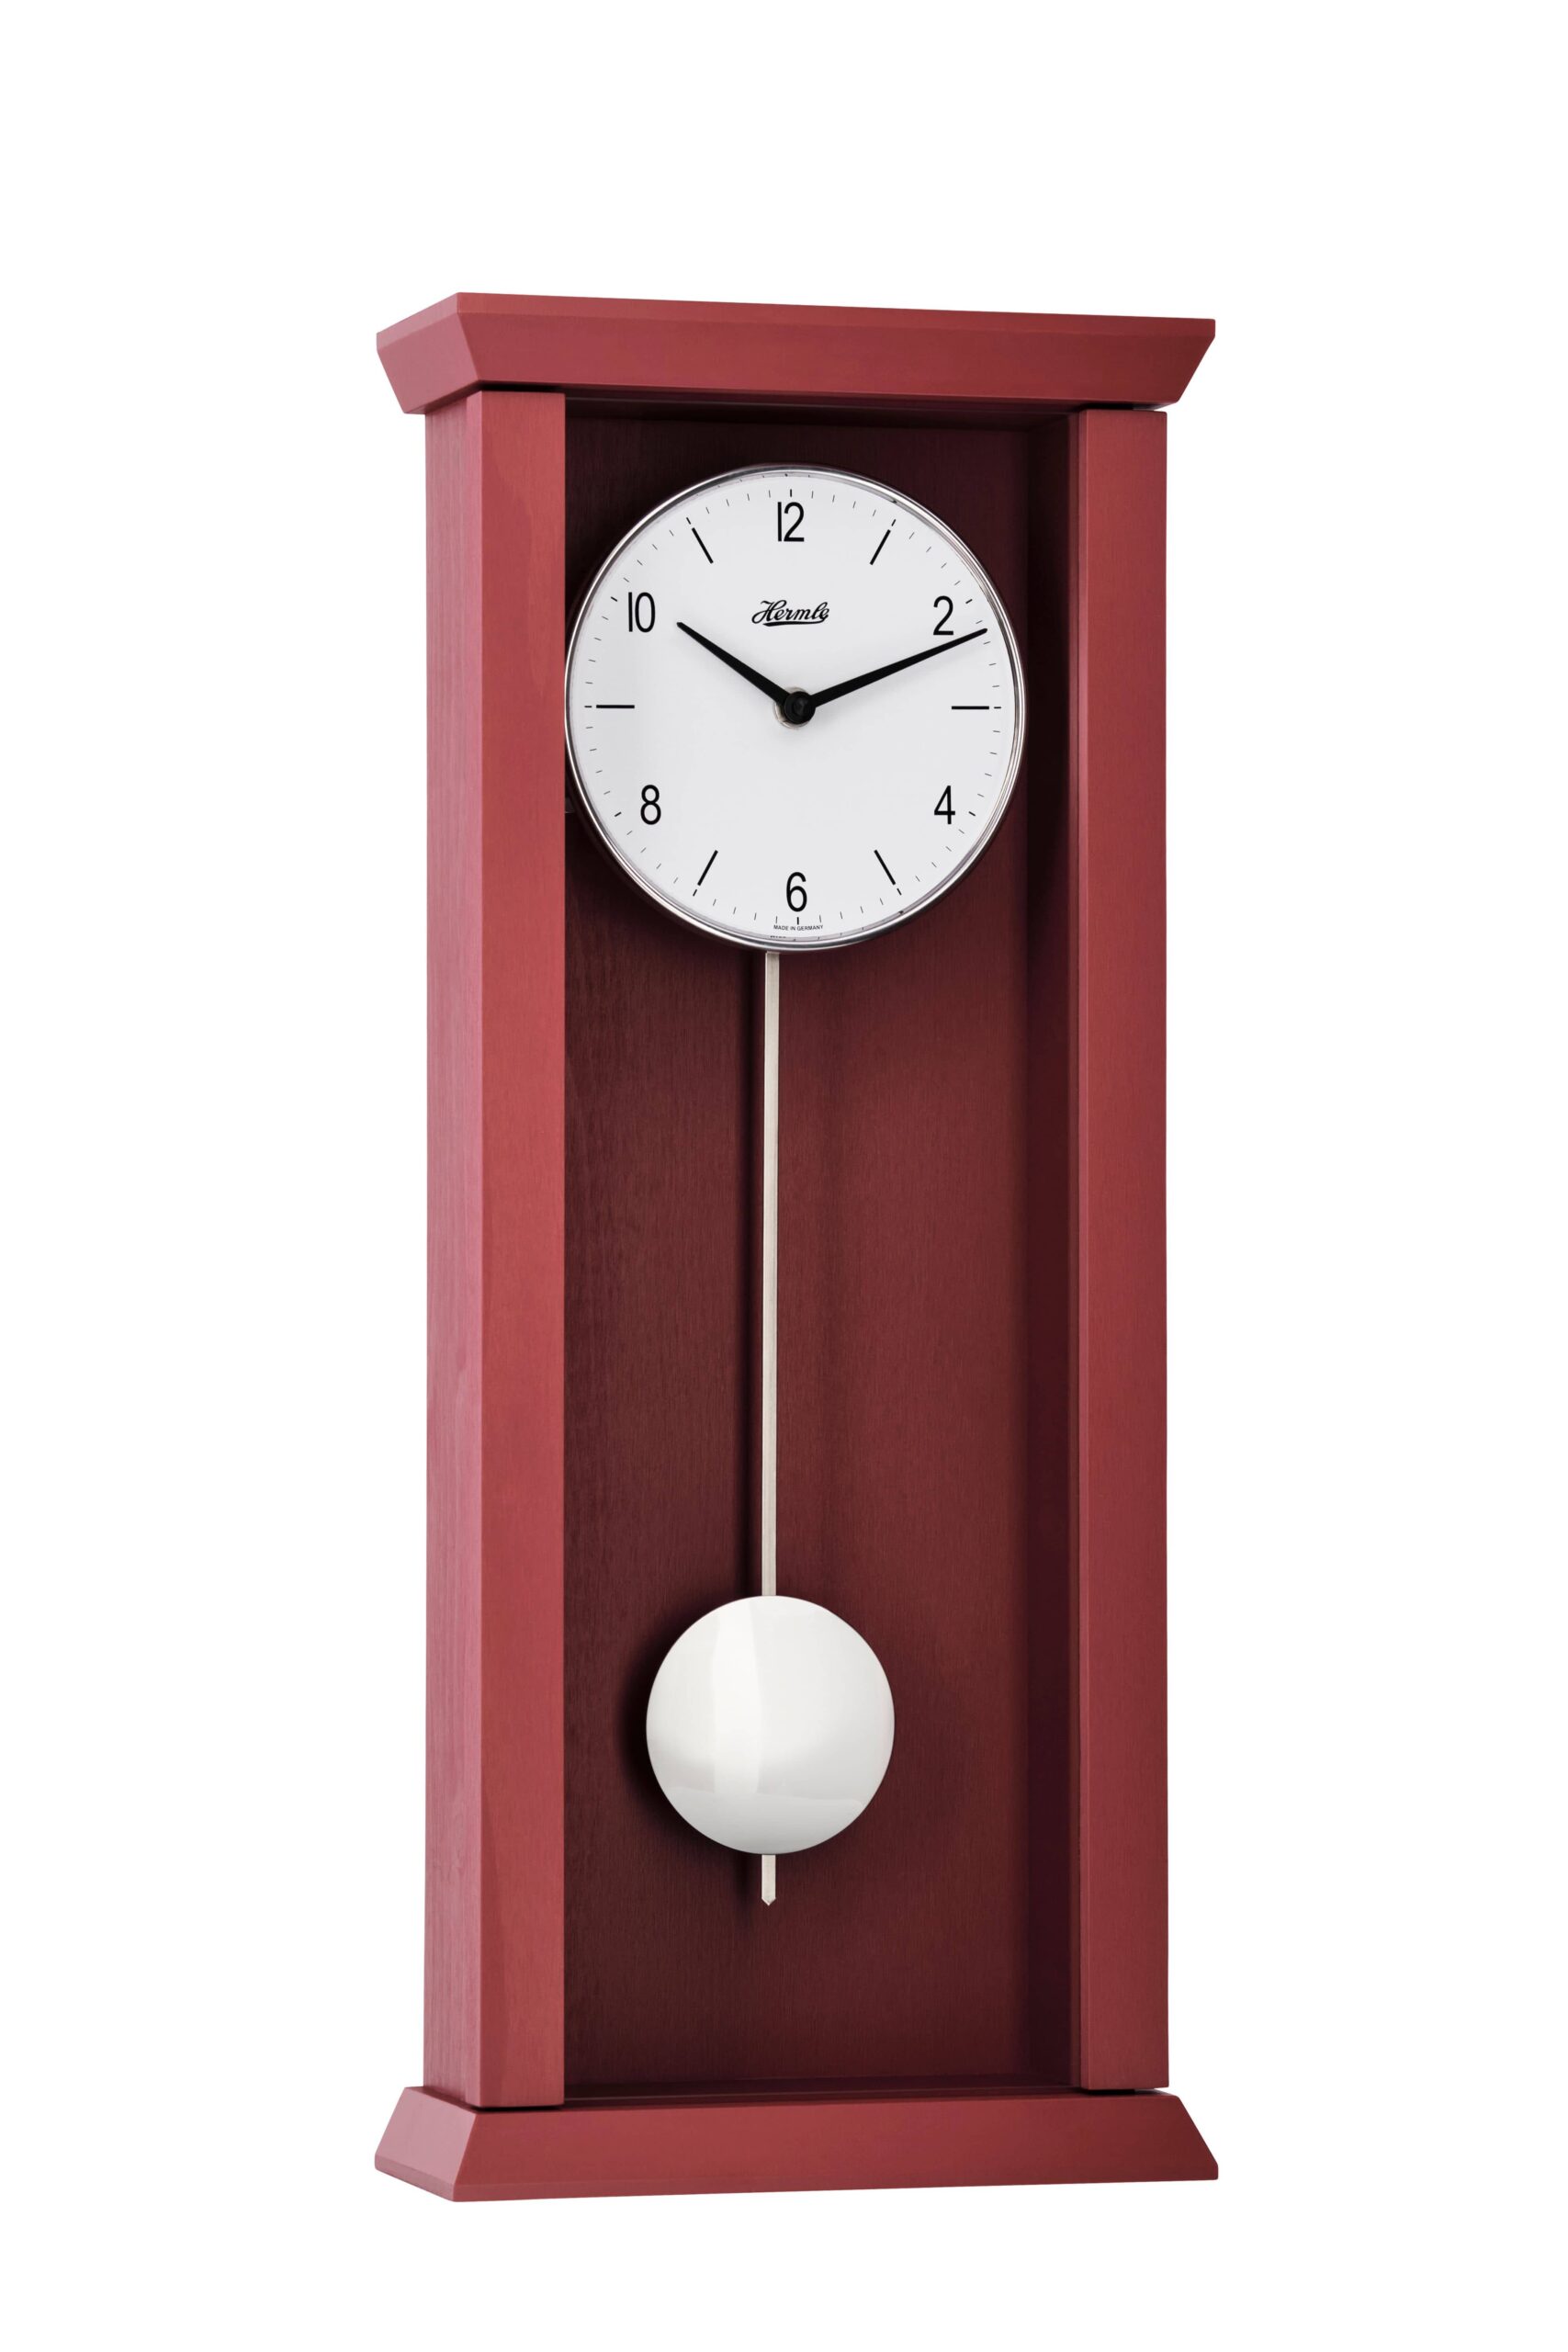 hermle-wall-clock-arden-quartz-only-pendulum-red-71002362200